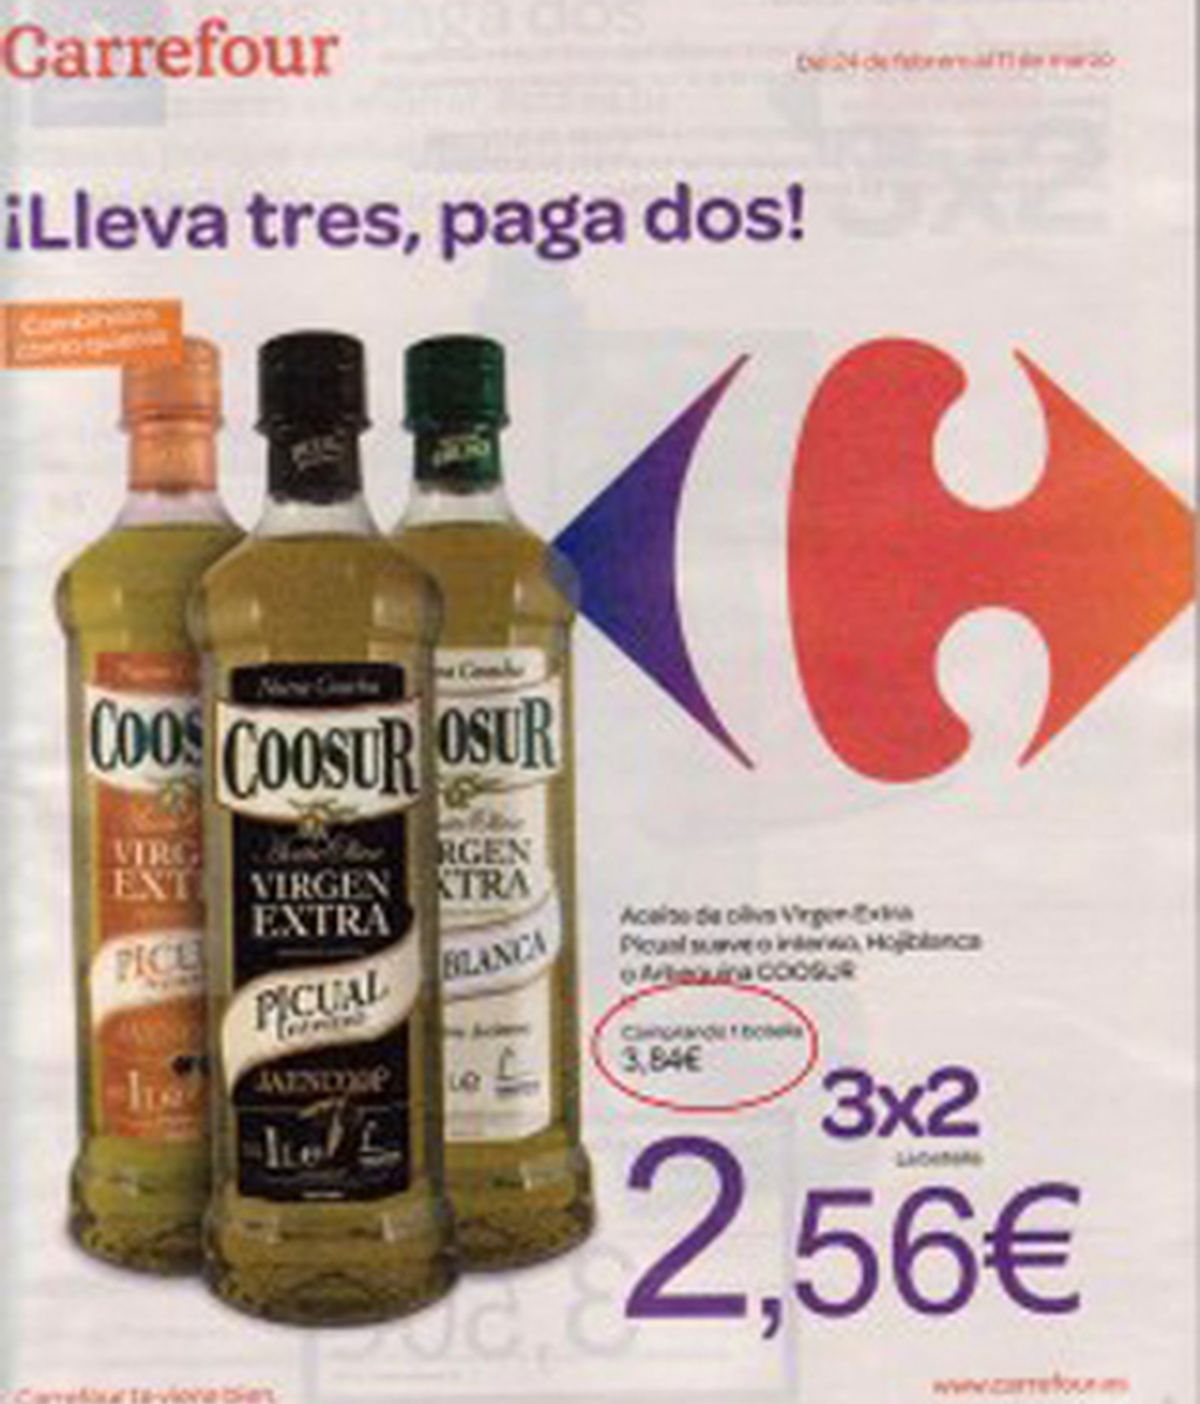 La publicidad de Carrefour presentada por la COAG en la denuncia por supuesta "venta a pérdidas" de aceite de oliva virgen extra de su marca blanca. Foto Blog Vagamundos